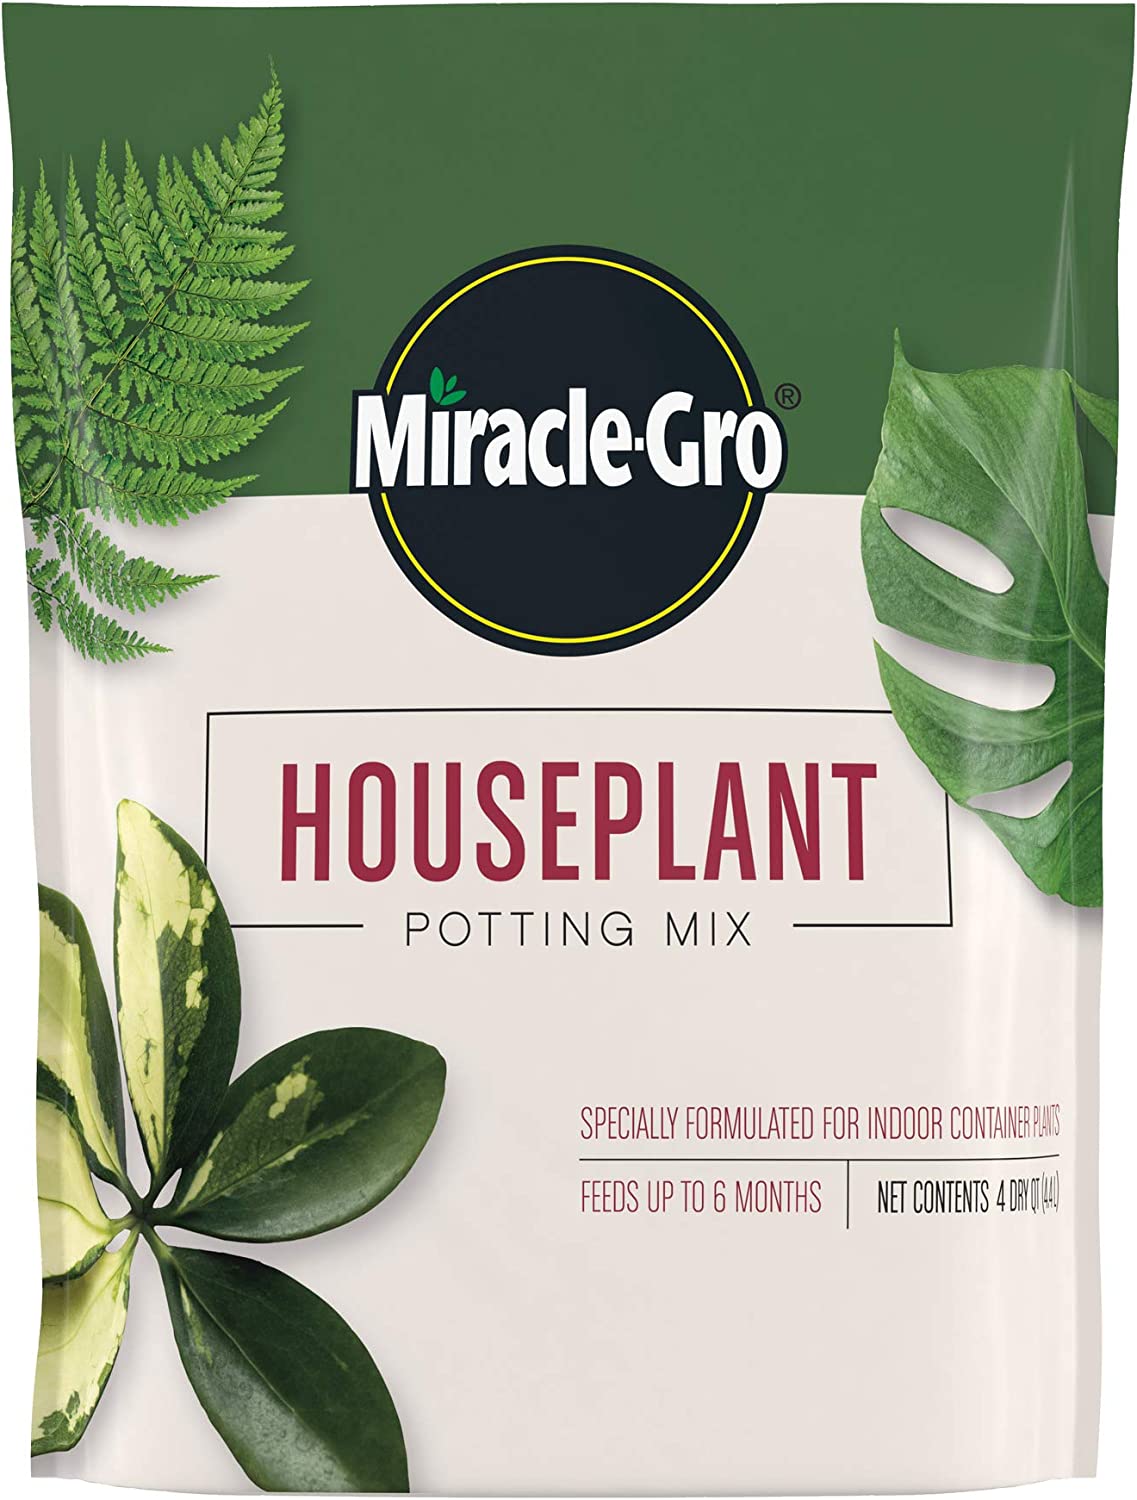 Miracle-Gro Houseplant Potting Mix: Fertilized, [...]